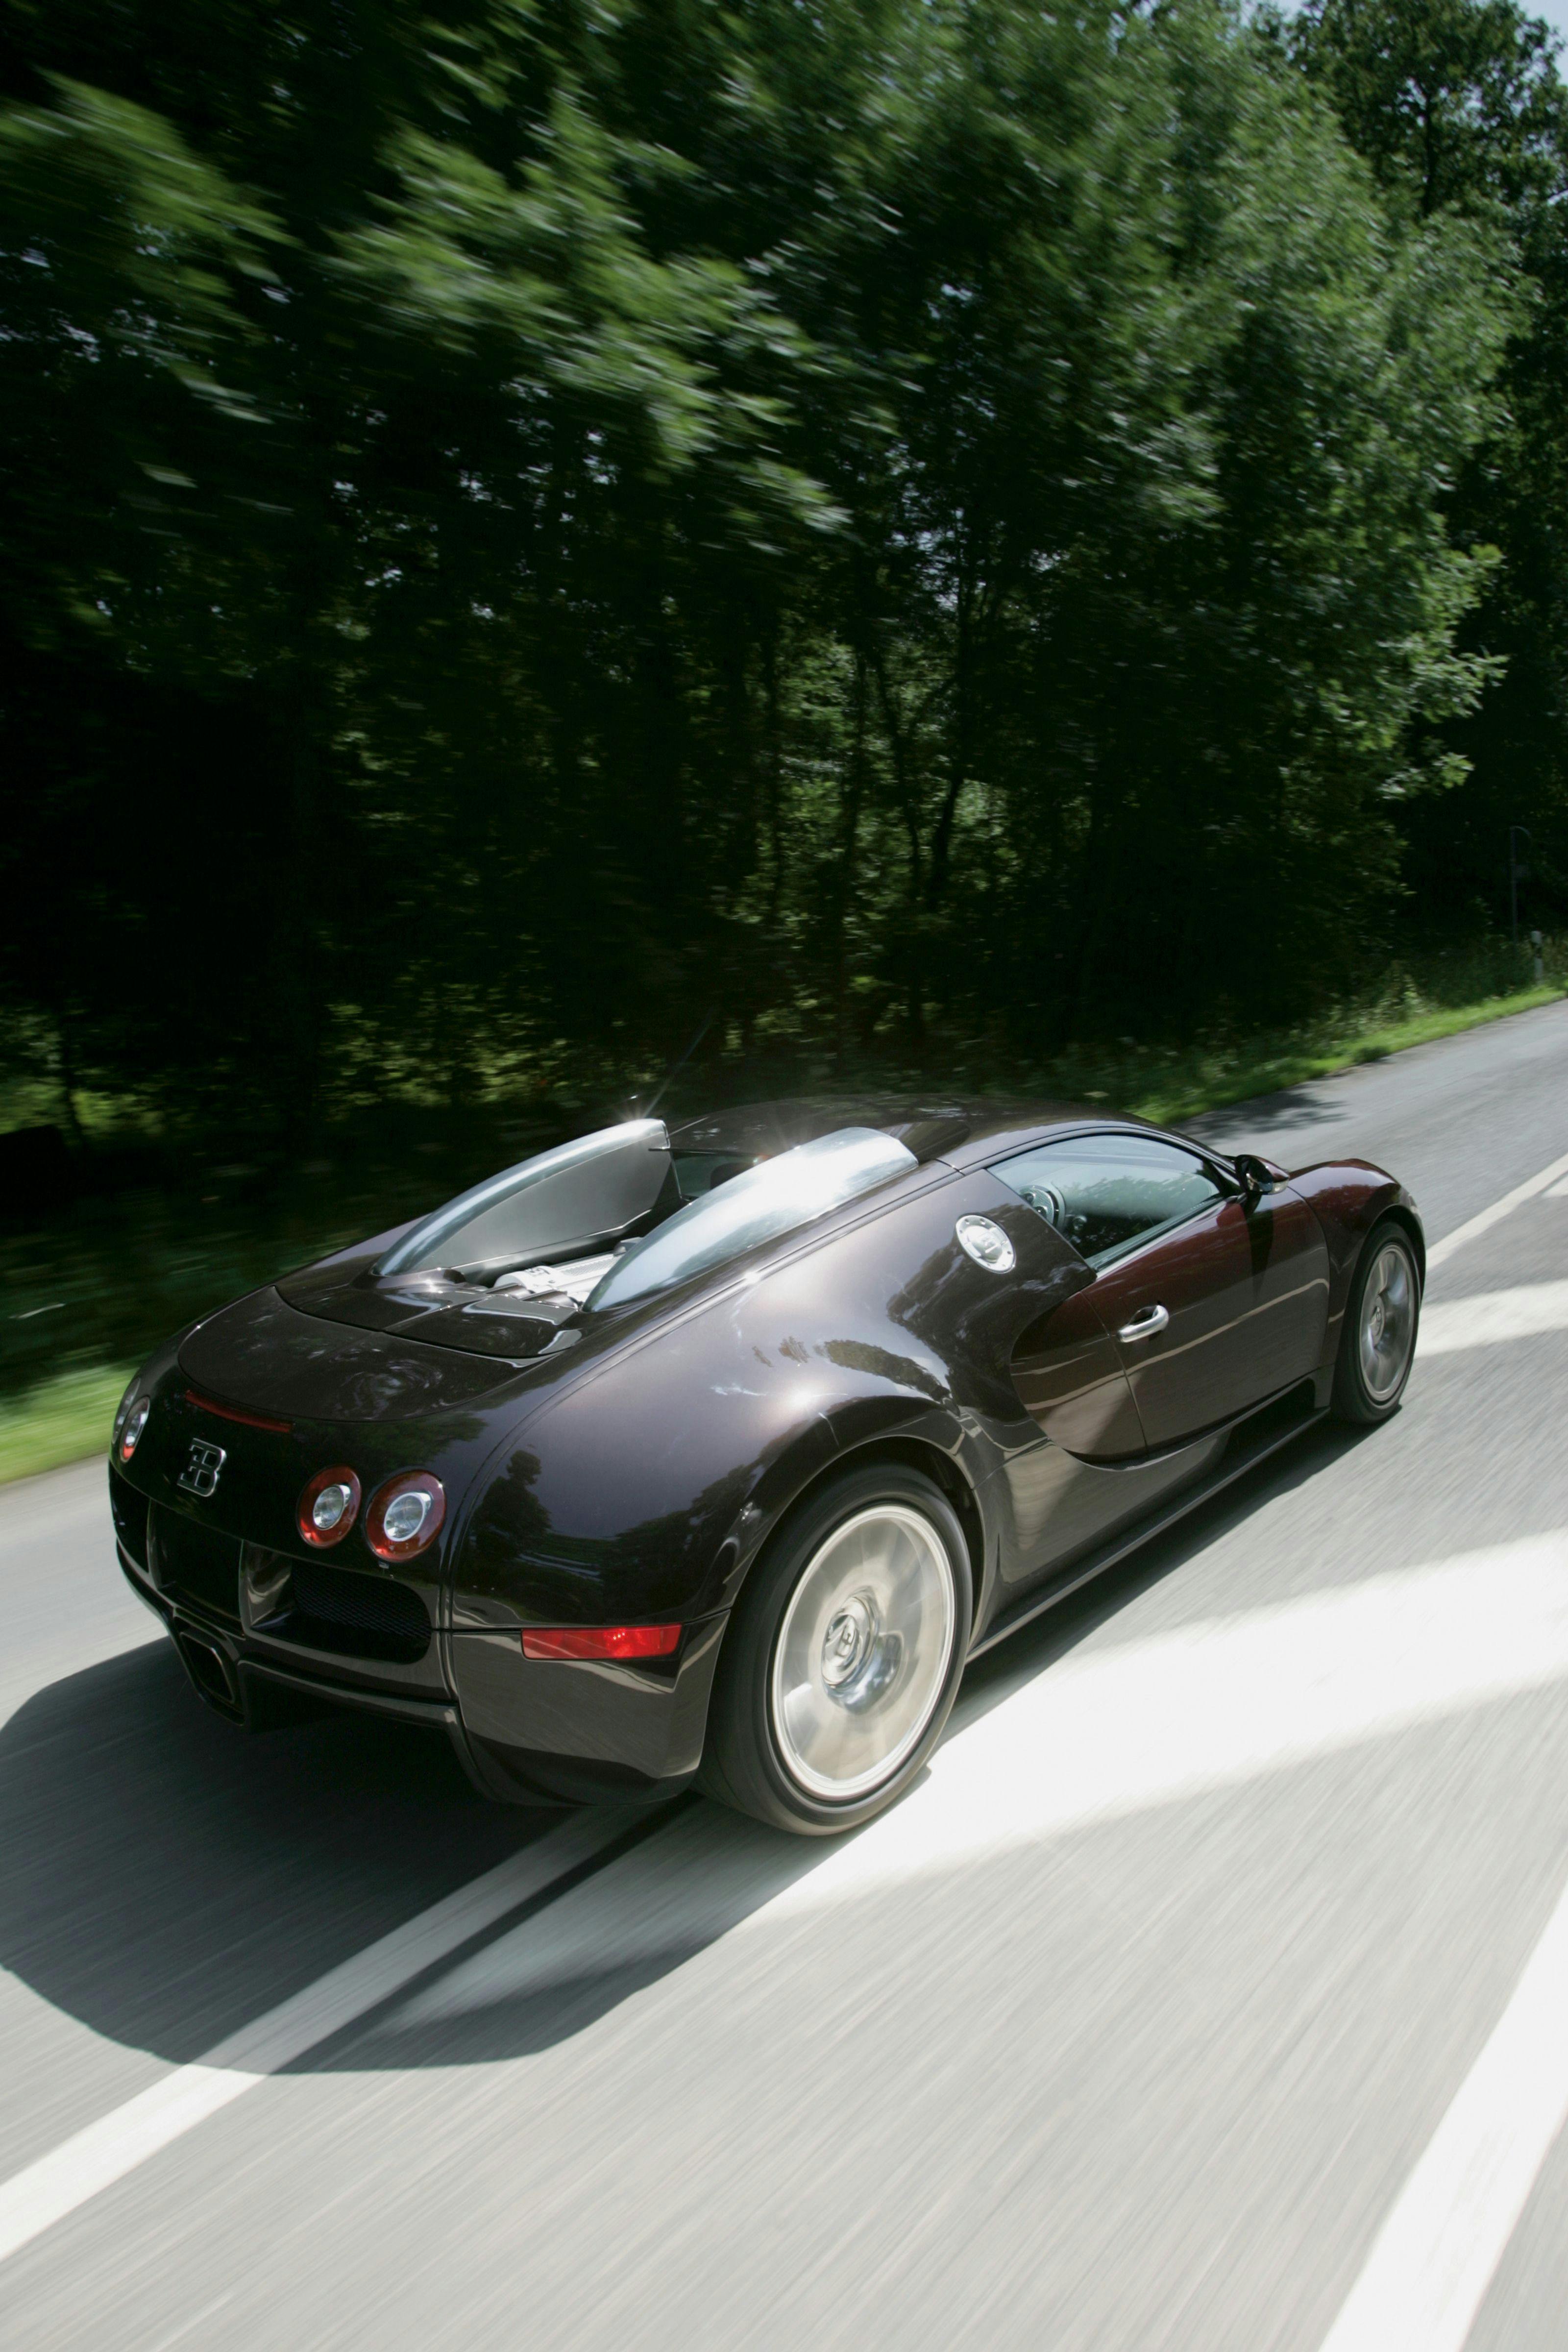 The Bugatti Veyron on the track of the Targa Florio